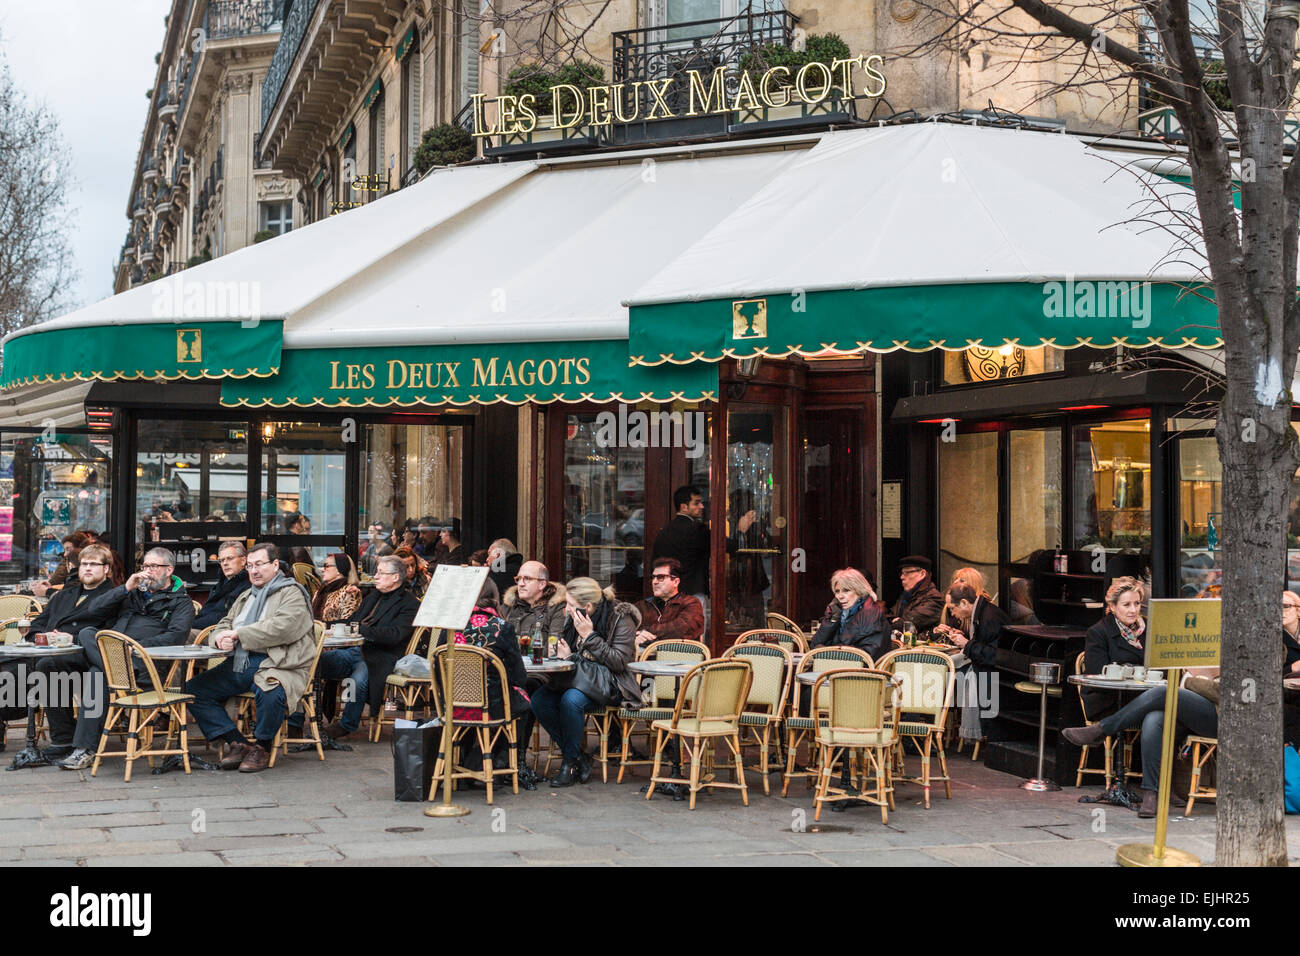 Cafe Les Deux Magots exterior, Saint-Germain, Paris, France Stock Photo